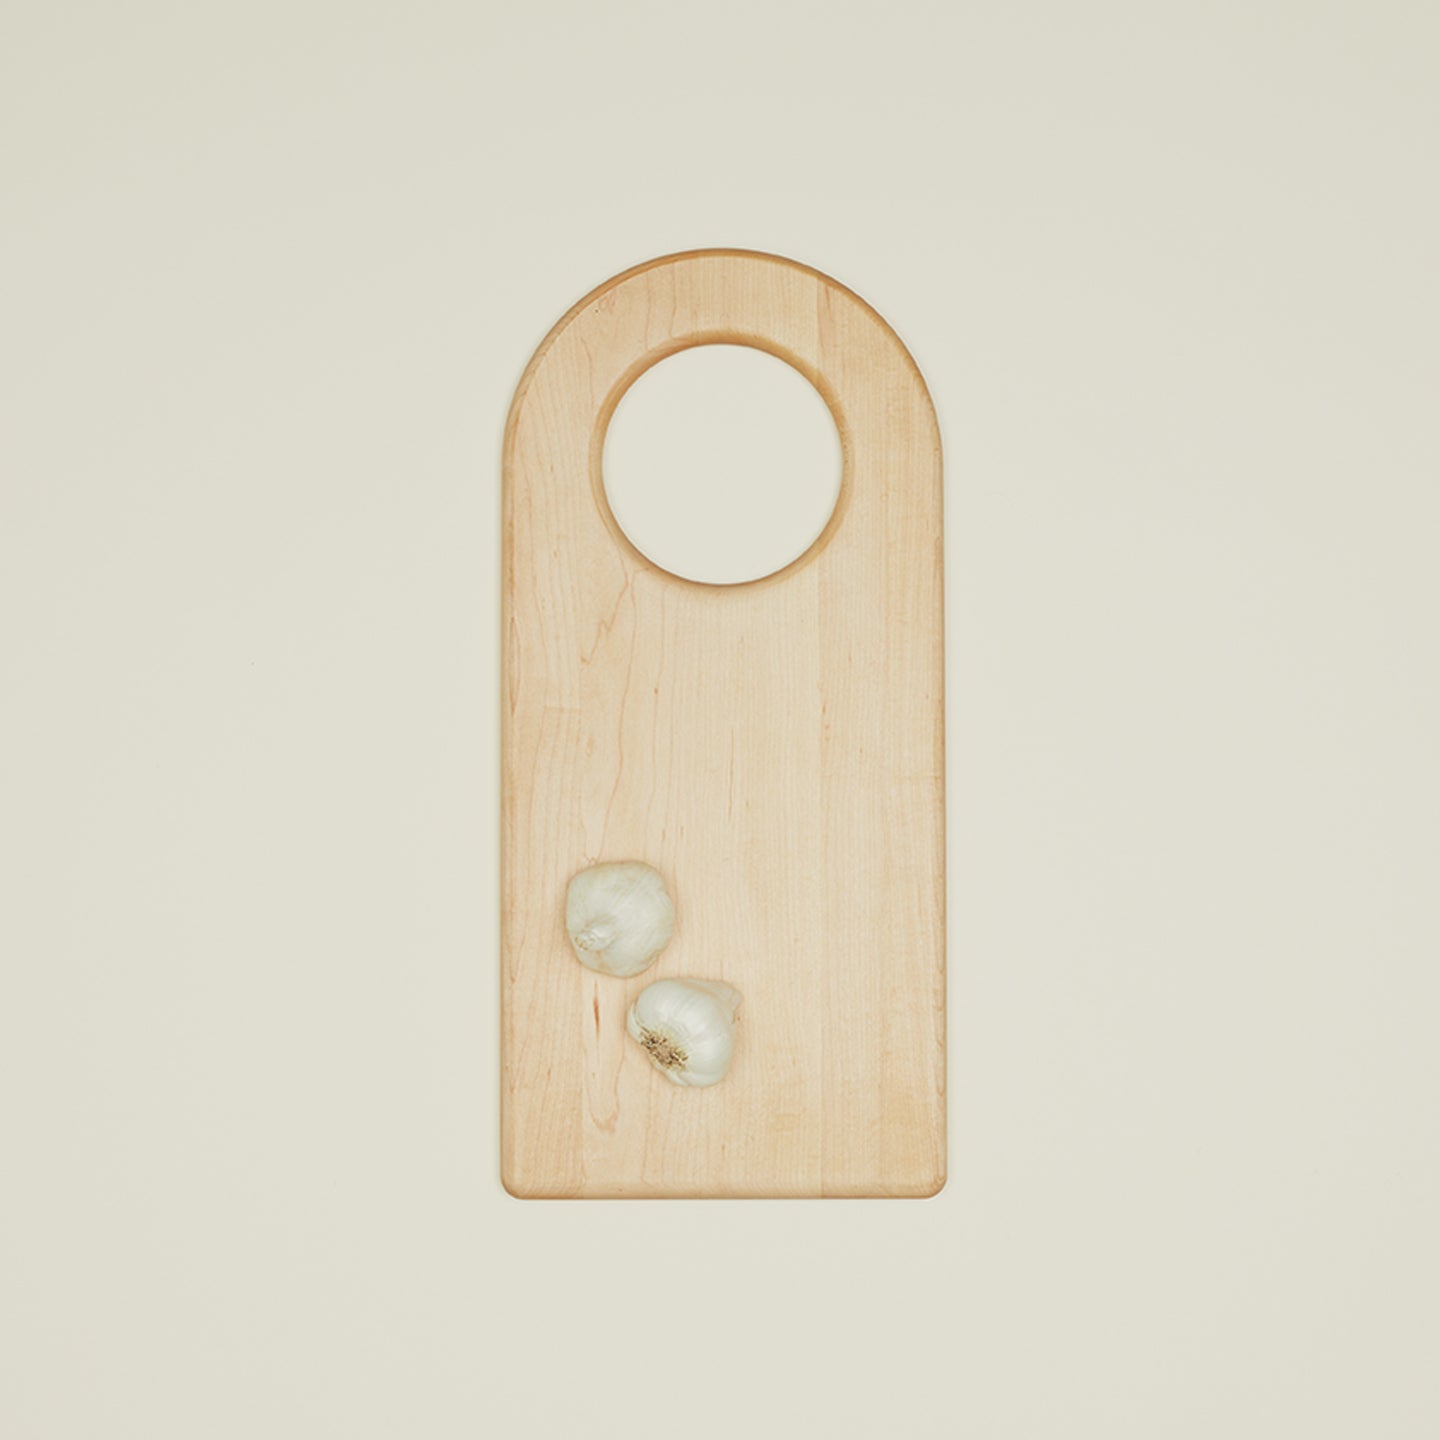 Simple Wood Arch Cutting Board